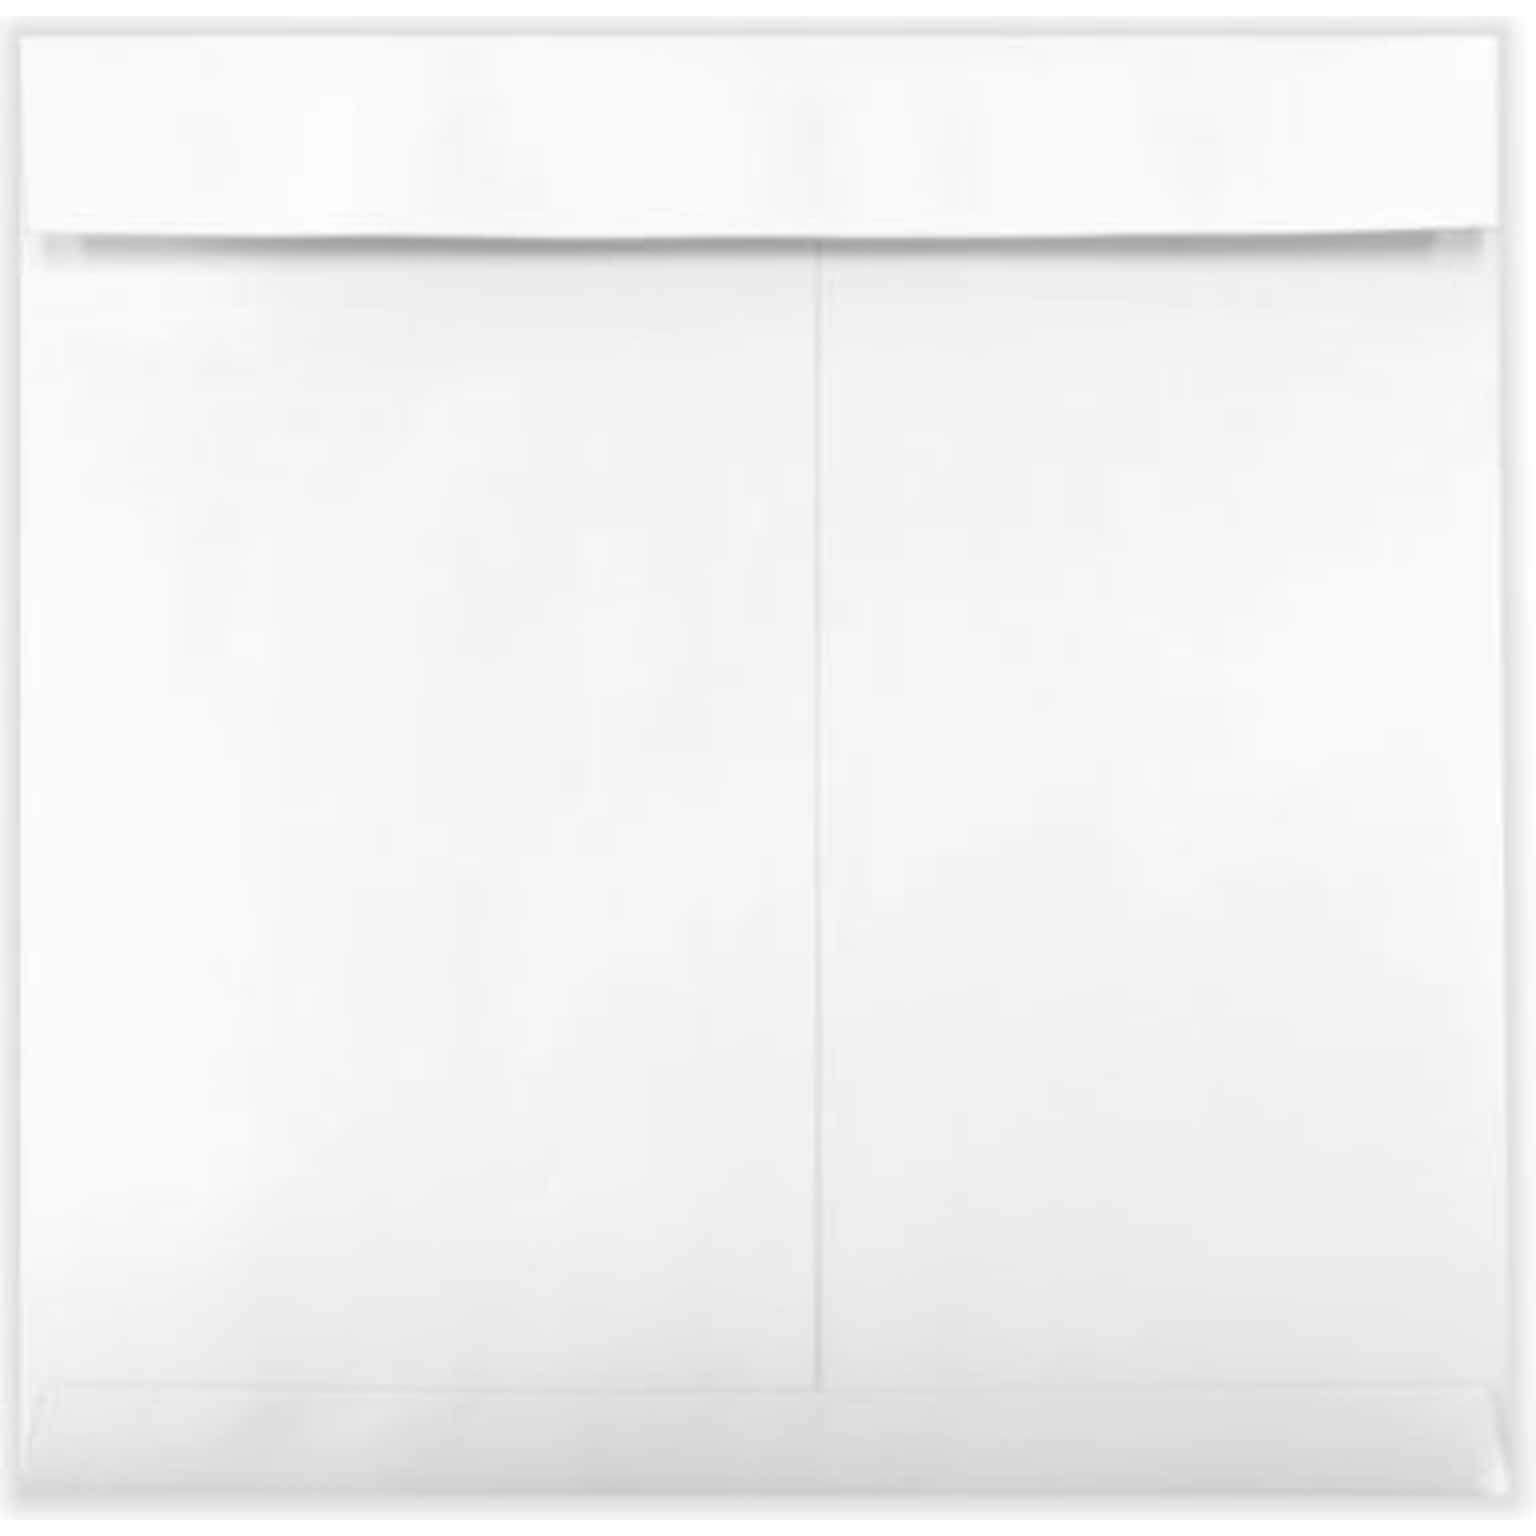 LUX 13 x 13 Square Envelopes, 50/Box, 28lb. White (WS-5222-50)